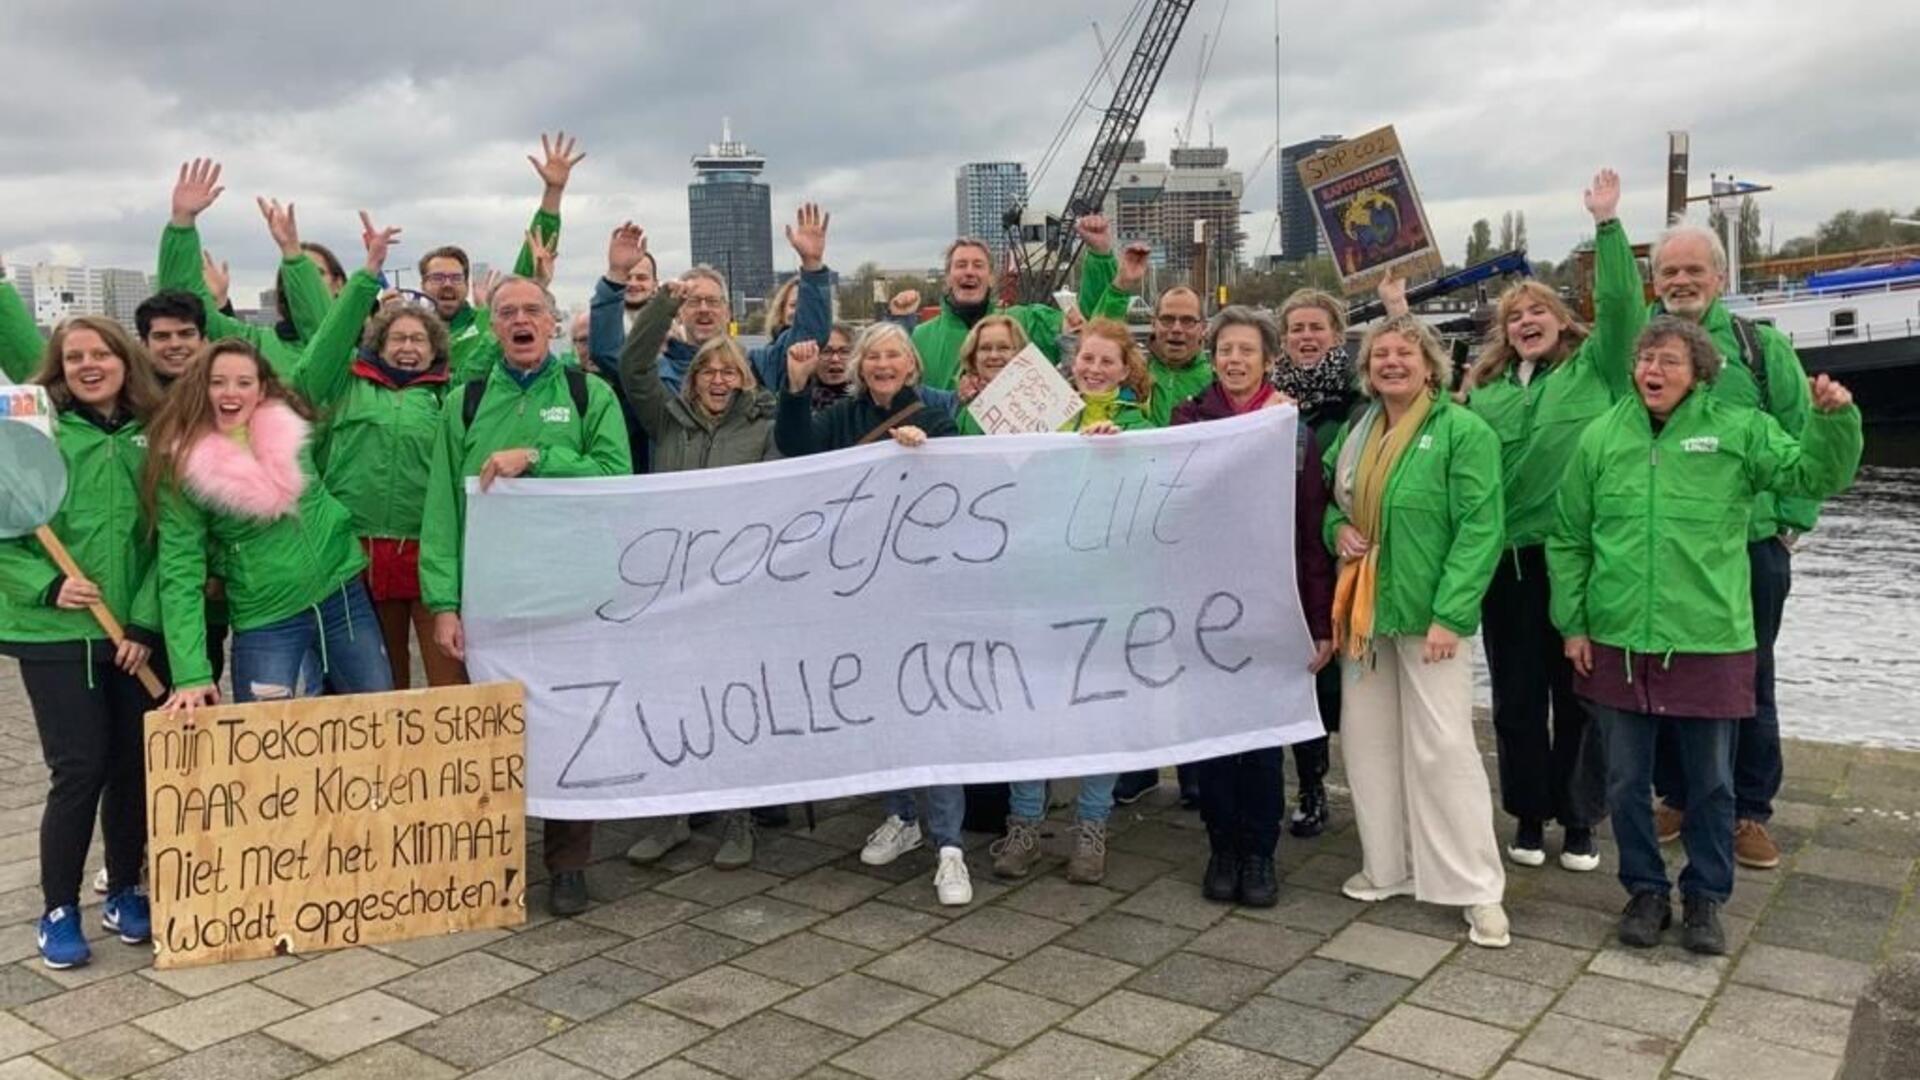 Tientallen Zwollenaren bij de klimaatmars. Ze hebben groenlinks-jasjes aan en houden een spandoek vast waarop staat: 'groetjes uit Zwolle aan zee'